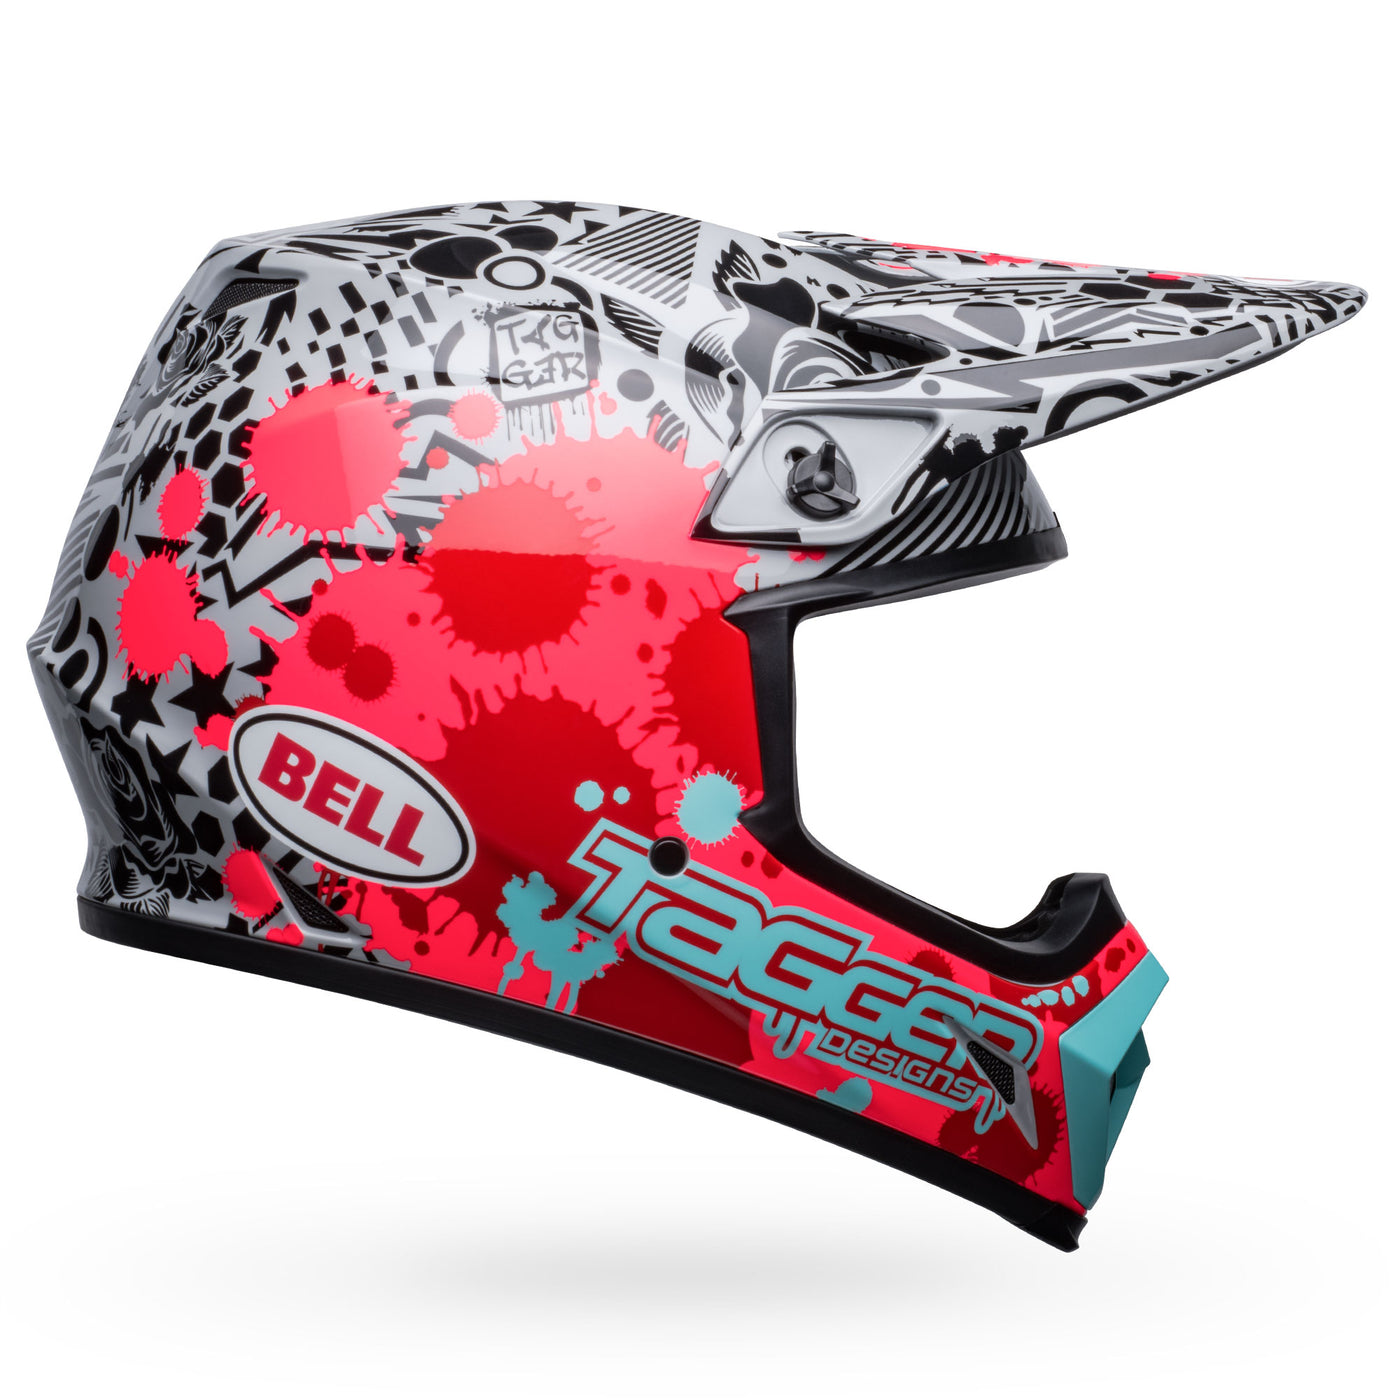 bell mx 9 mips dirt motorcycle helmet tagger splatter gloss bright red gray right